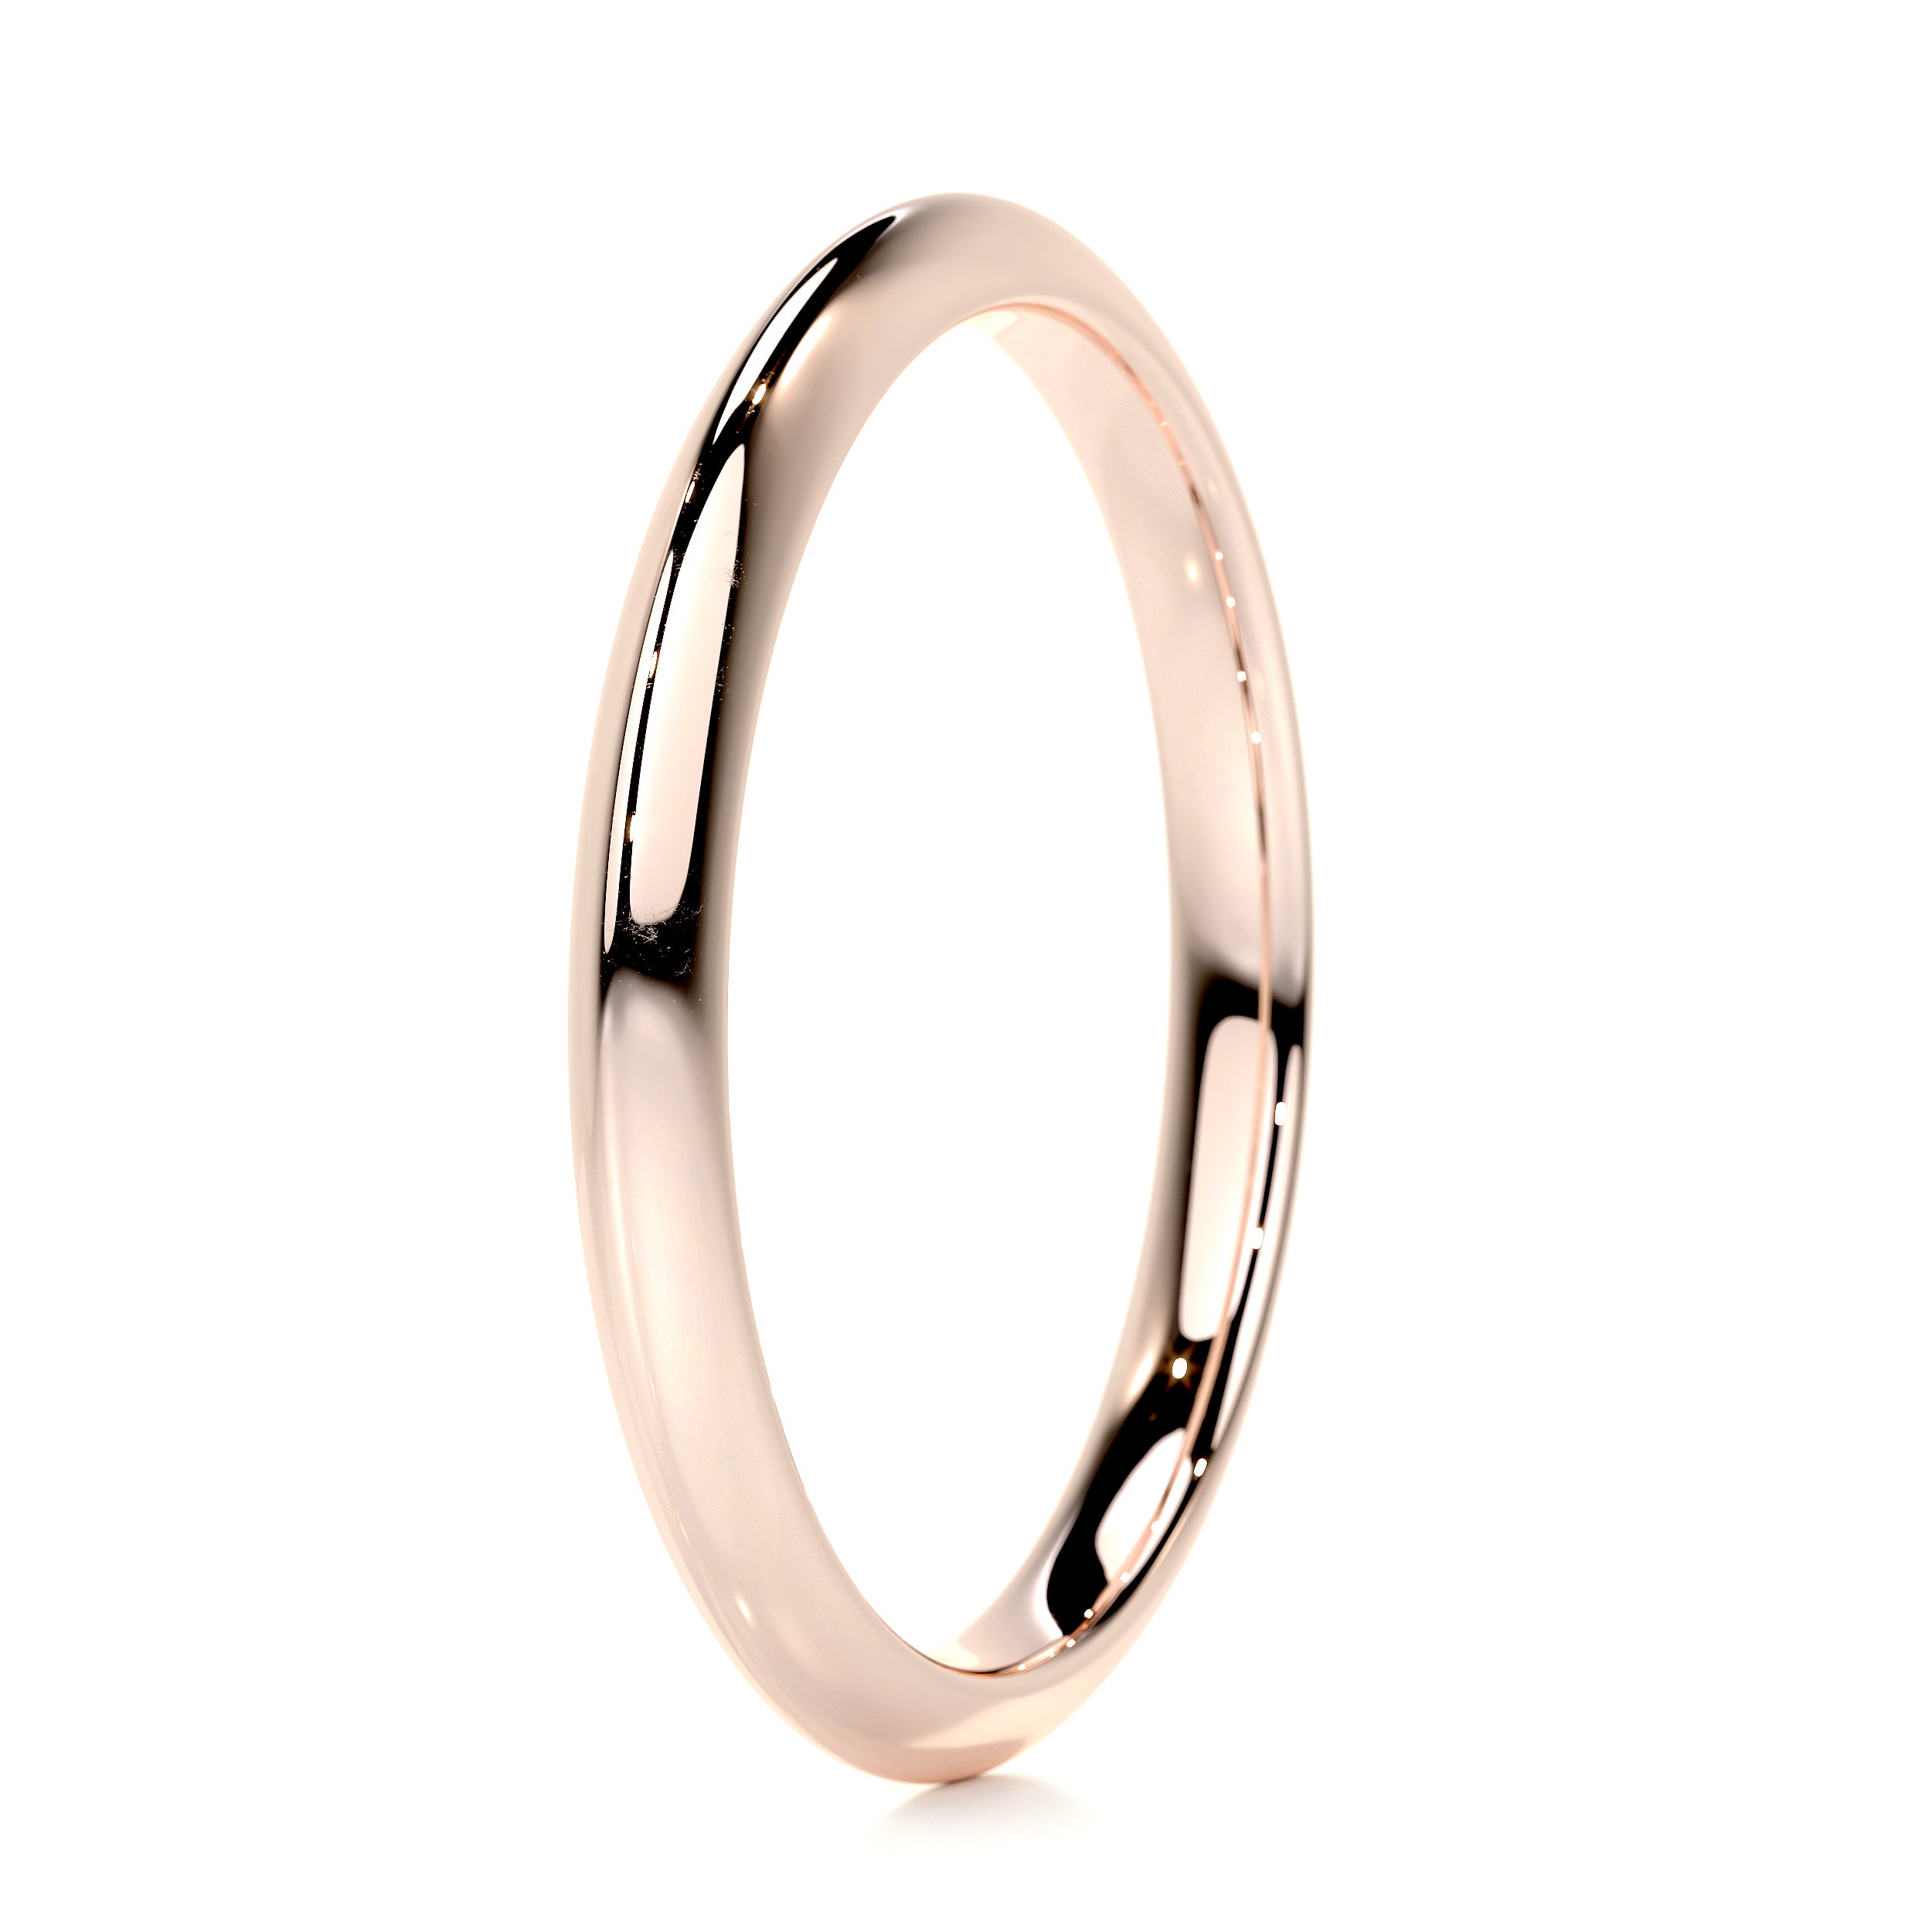 Alexis Wedding Ring -14K Rose Gold